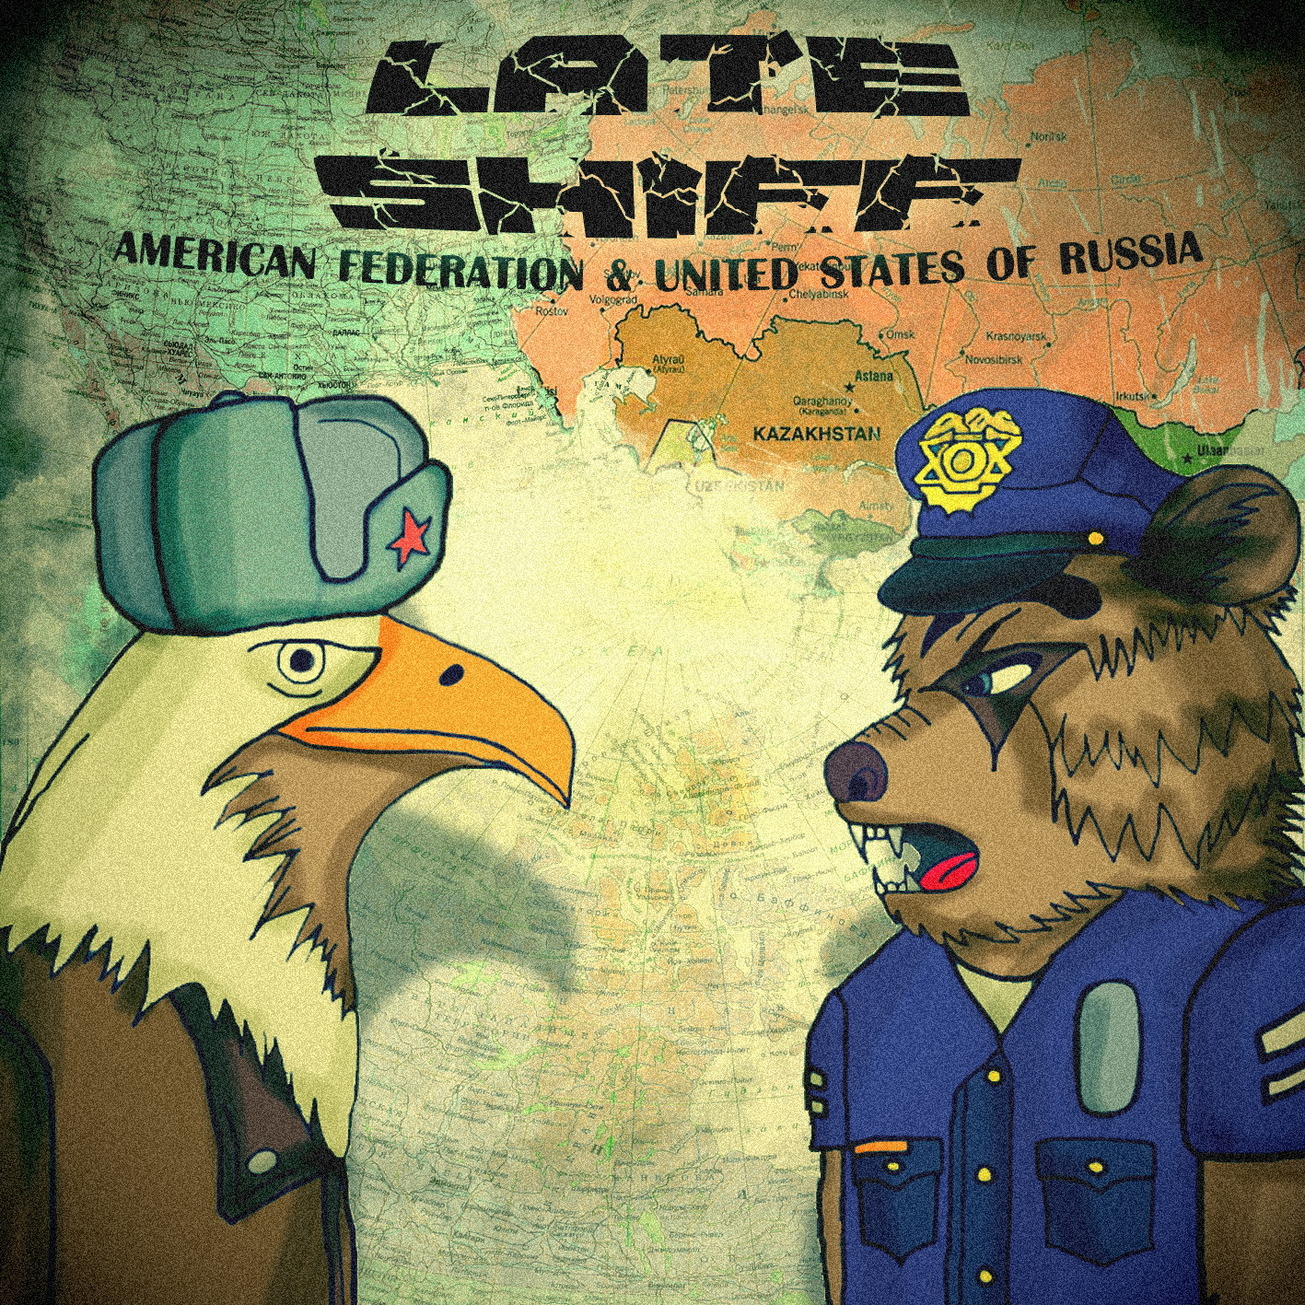 Посмотреть Late Shiff - Американская Федерация и Соединённые Штаты России